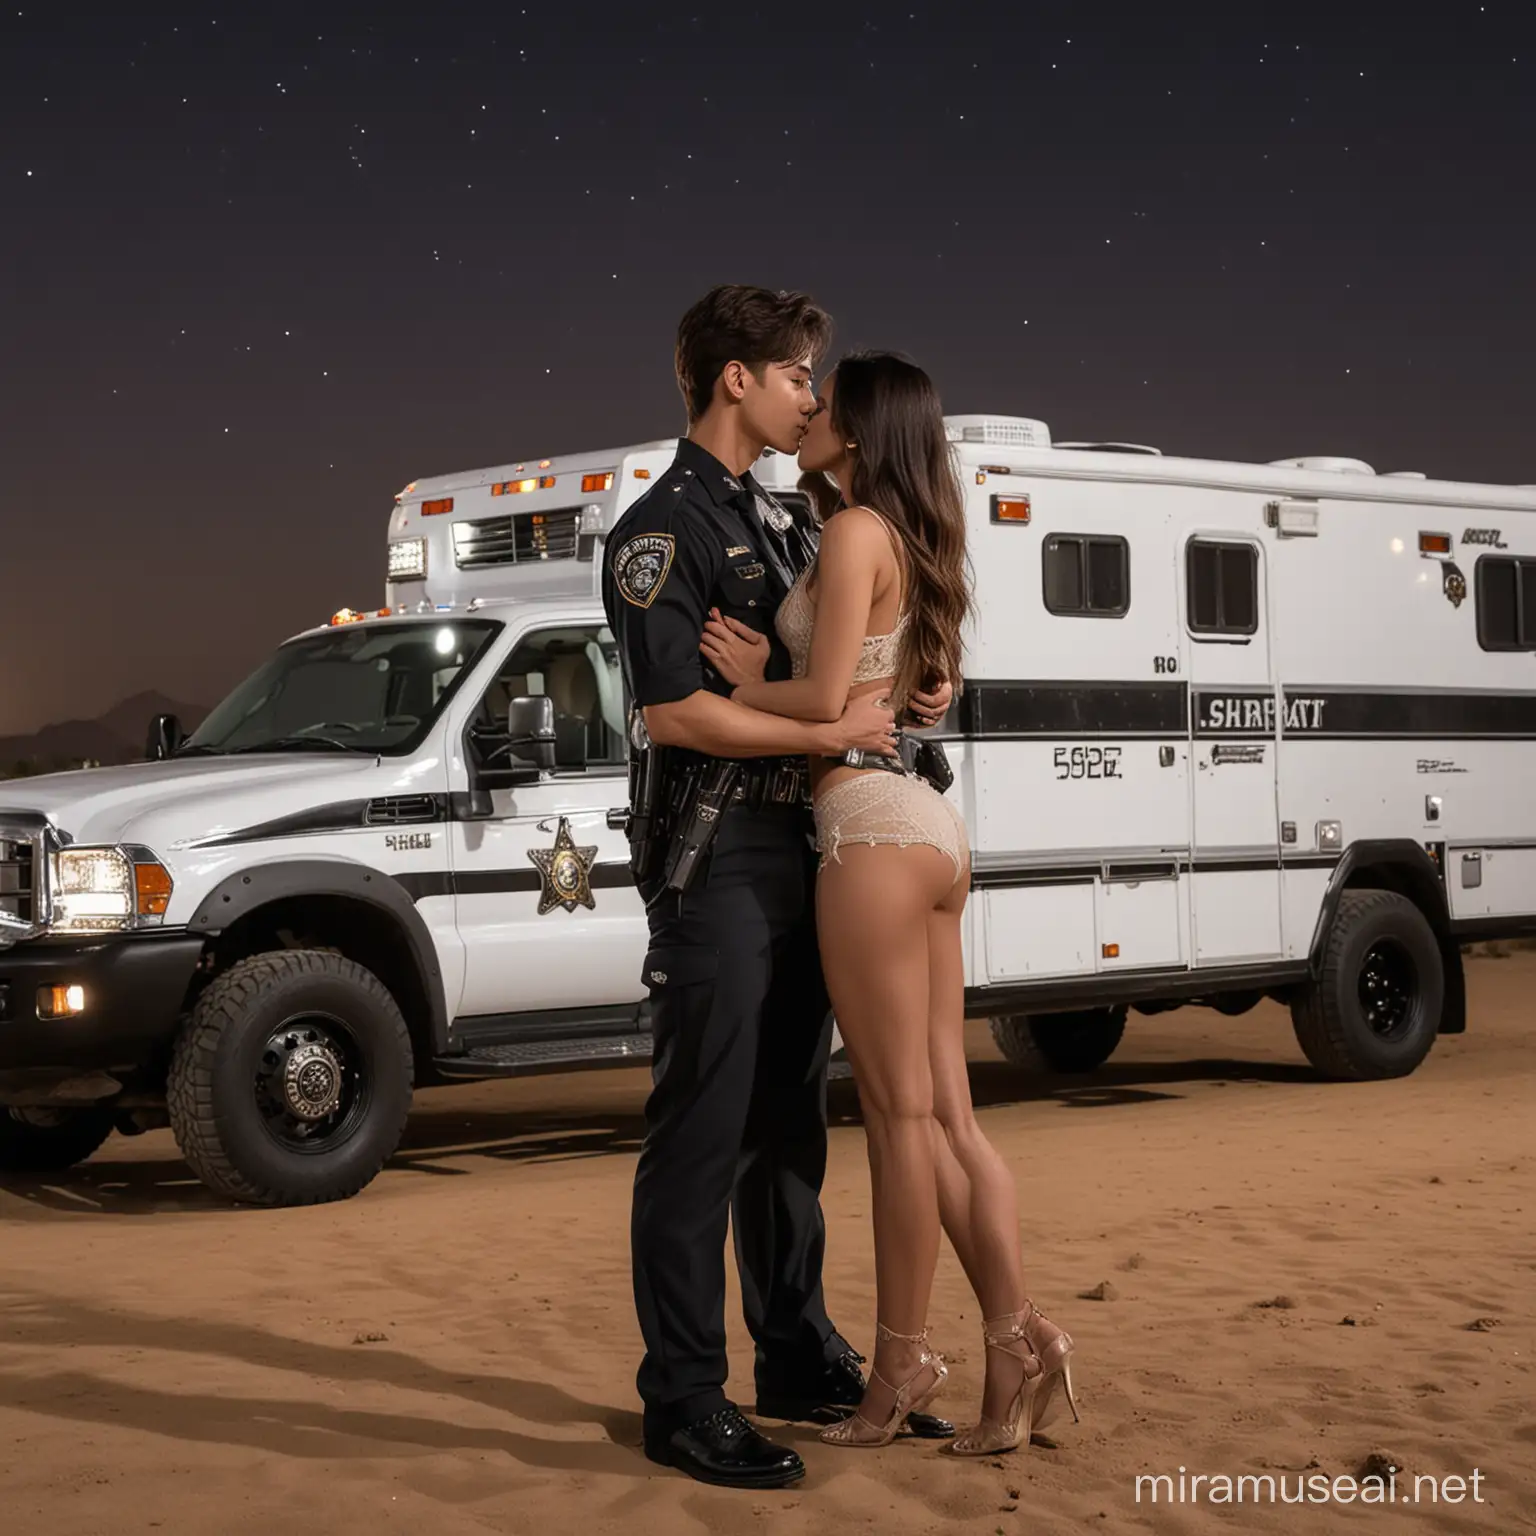 Kpop Idol LAPD Officer Kisses Arab Girl by Sheriff Motor Home in Desert Night